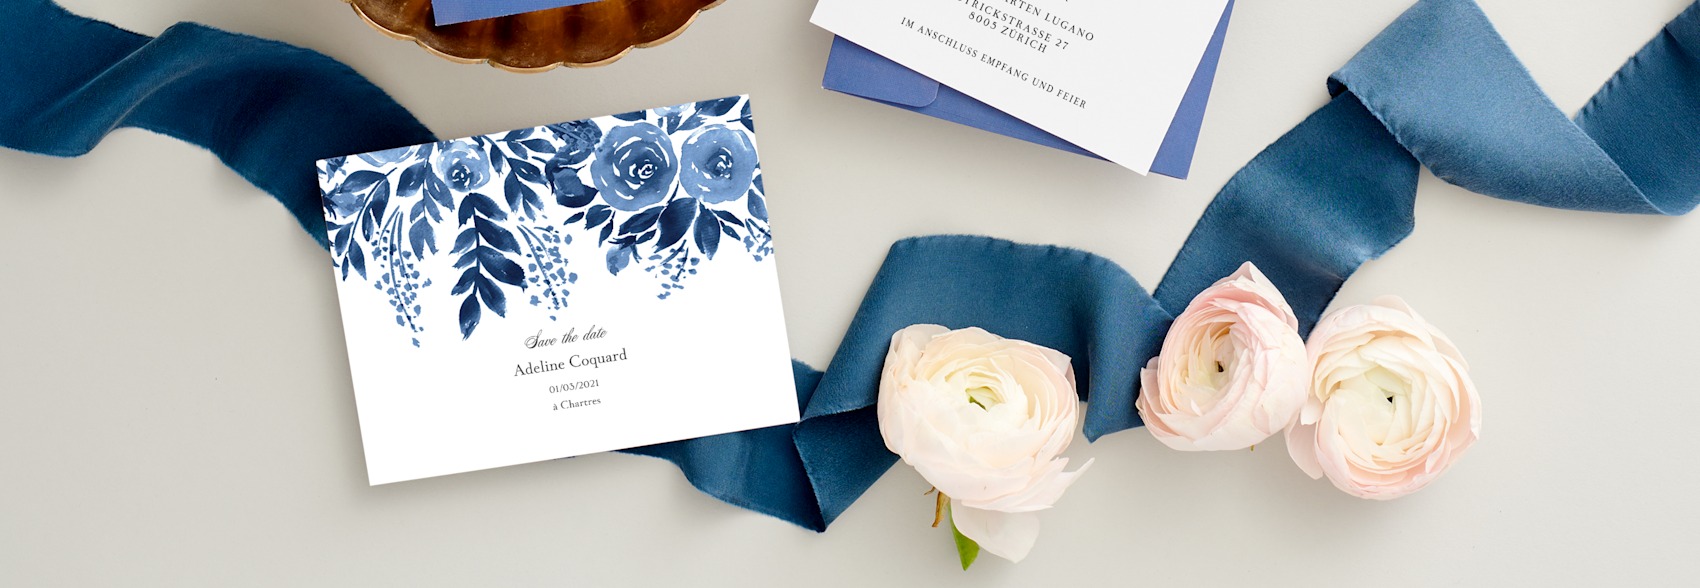 Save the Date Karten mit blauen und weißen Blumen